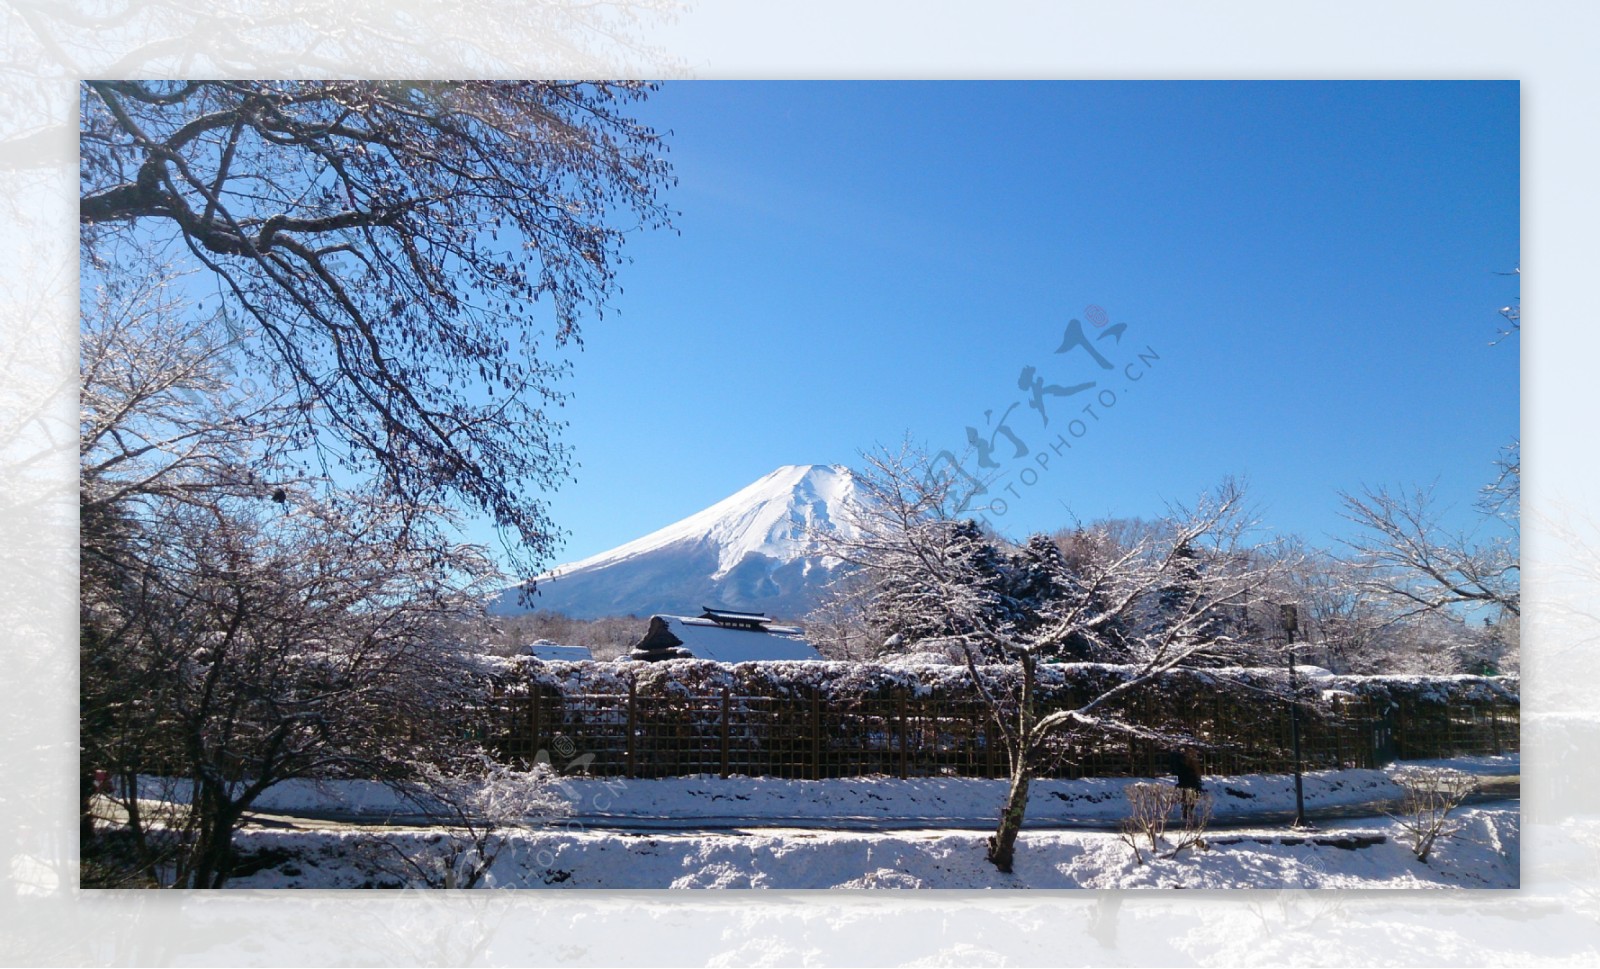 冬季富士山风景图片